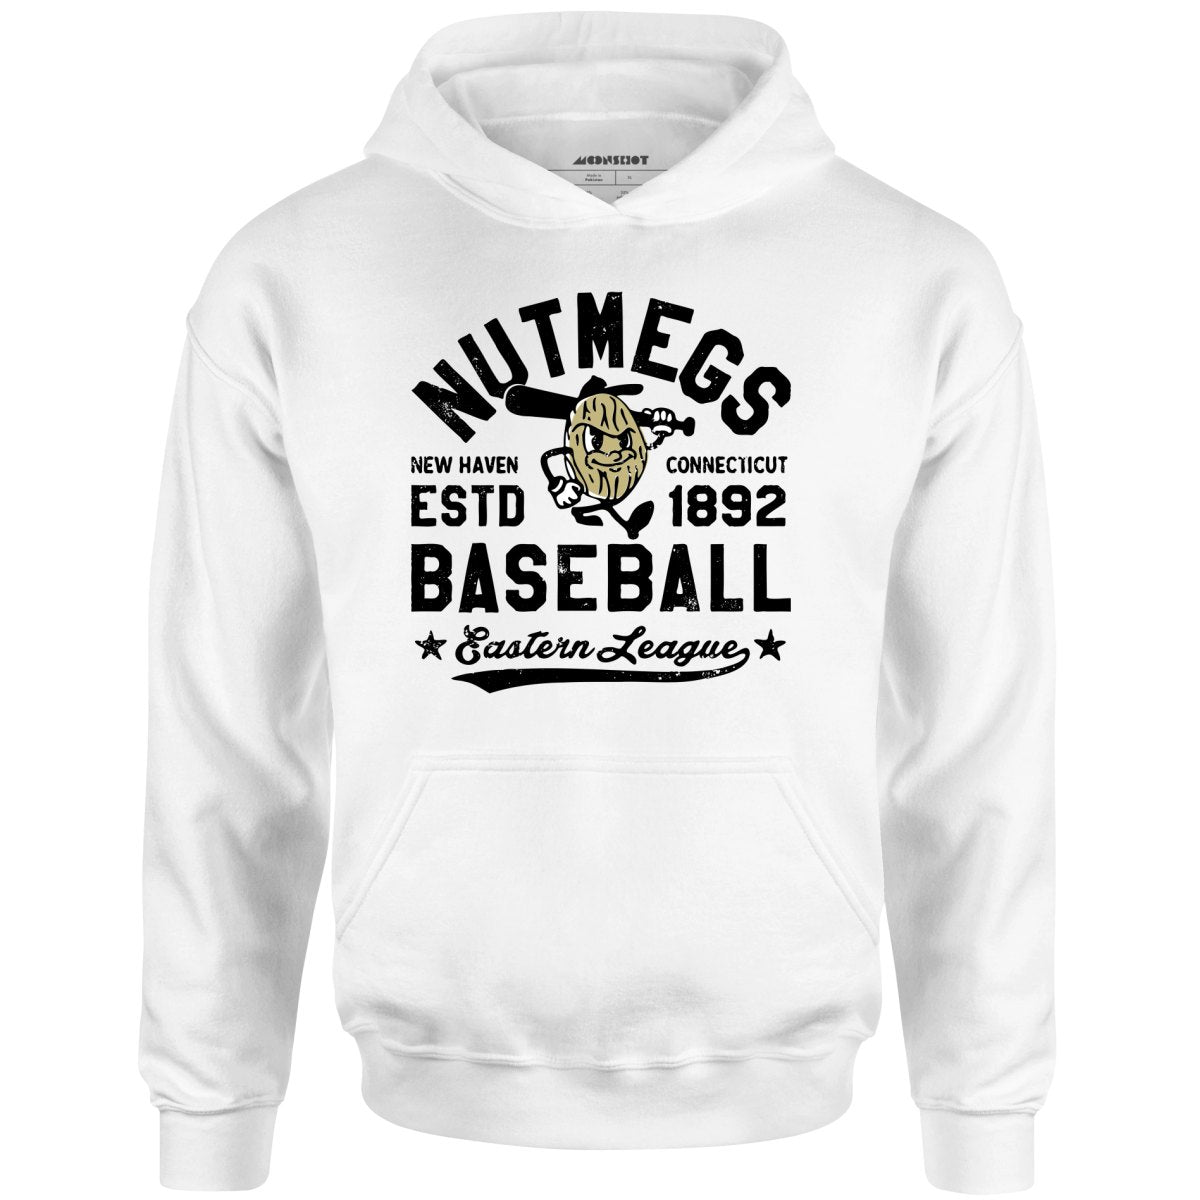 New Haven Nutmegs - Connecticut - Vintage Defunct Baseball Teams - Unisex Hoodie